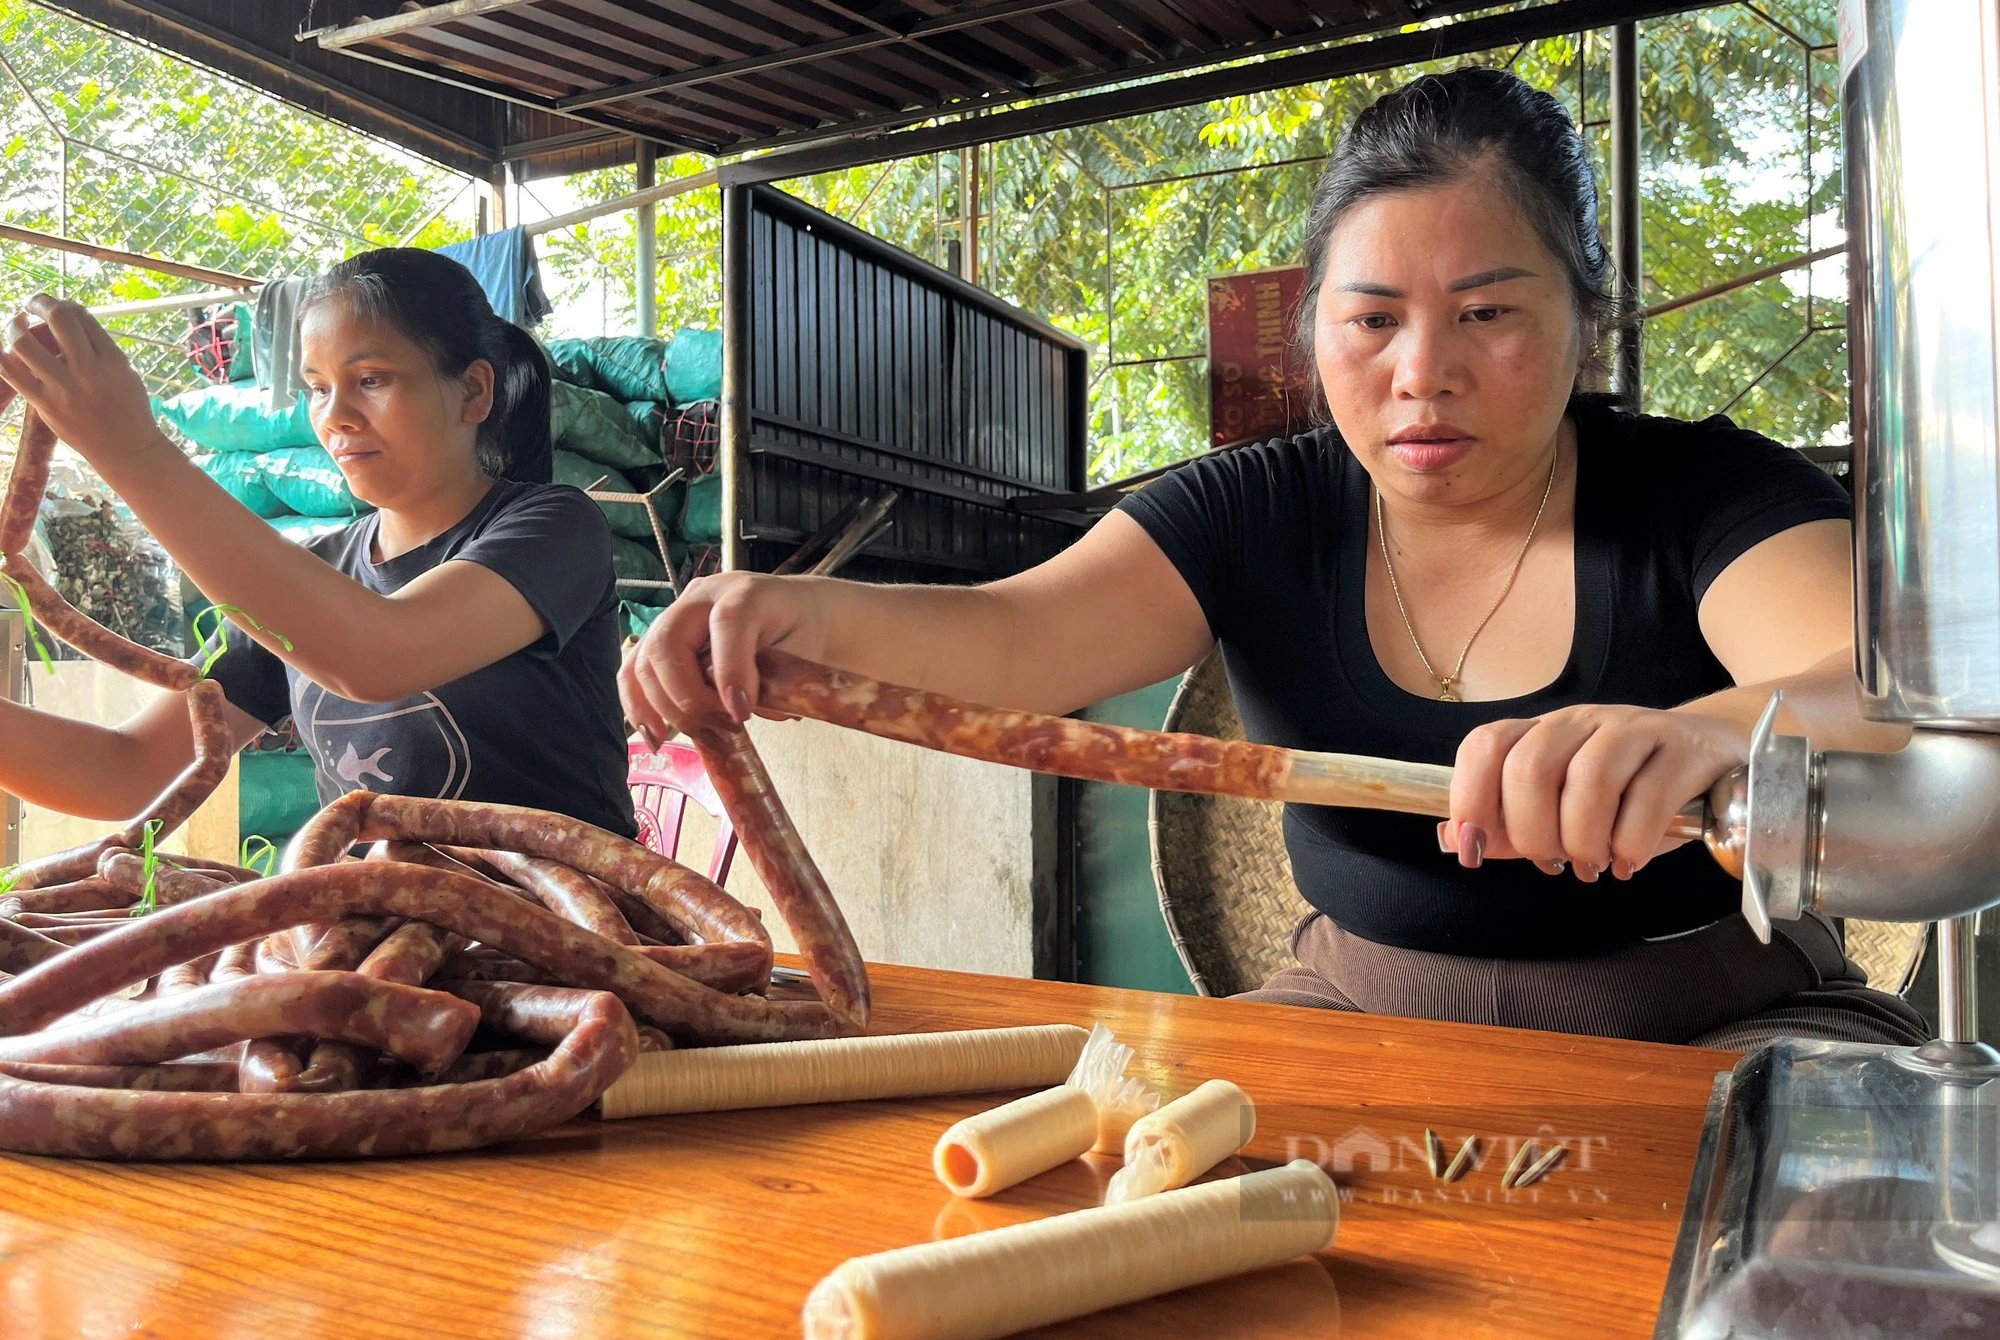 Bò giàng, thịt lợn gác bếp, vố số đặc sản vạn người mê của miền núi Nghệ An xuống phố bán dịp Tết- Ảnh 3.